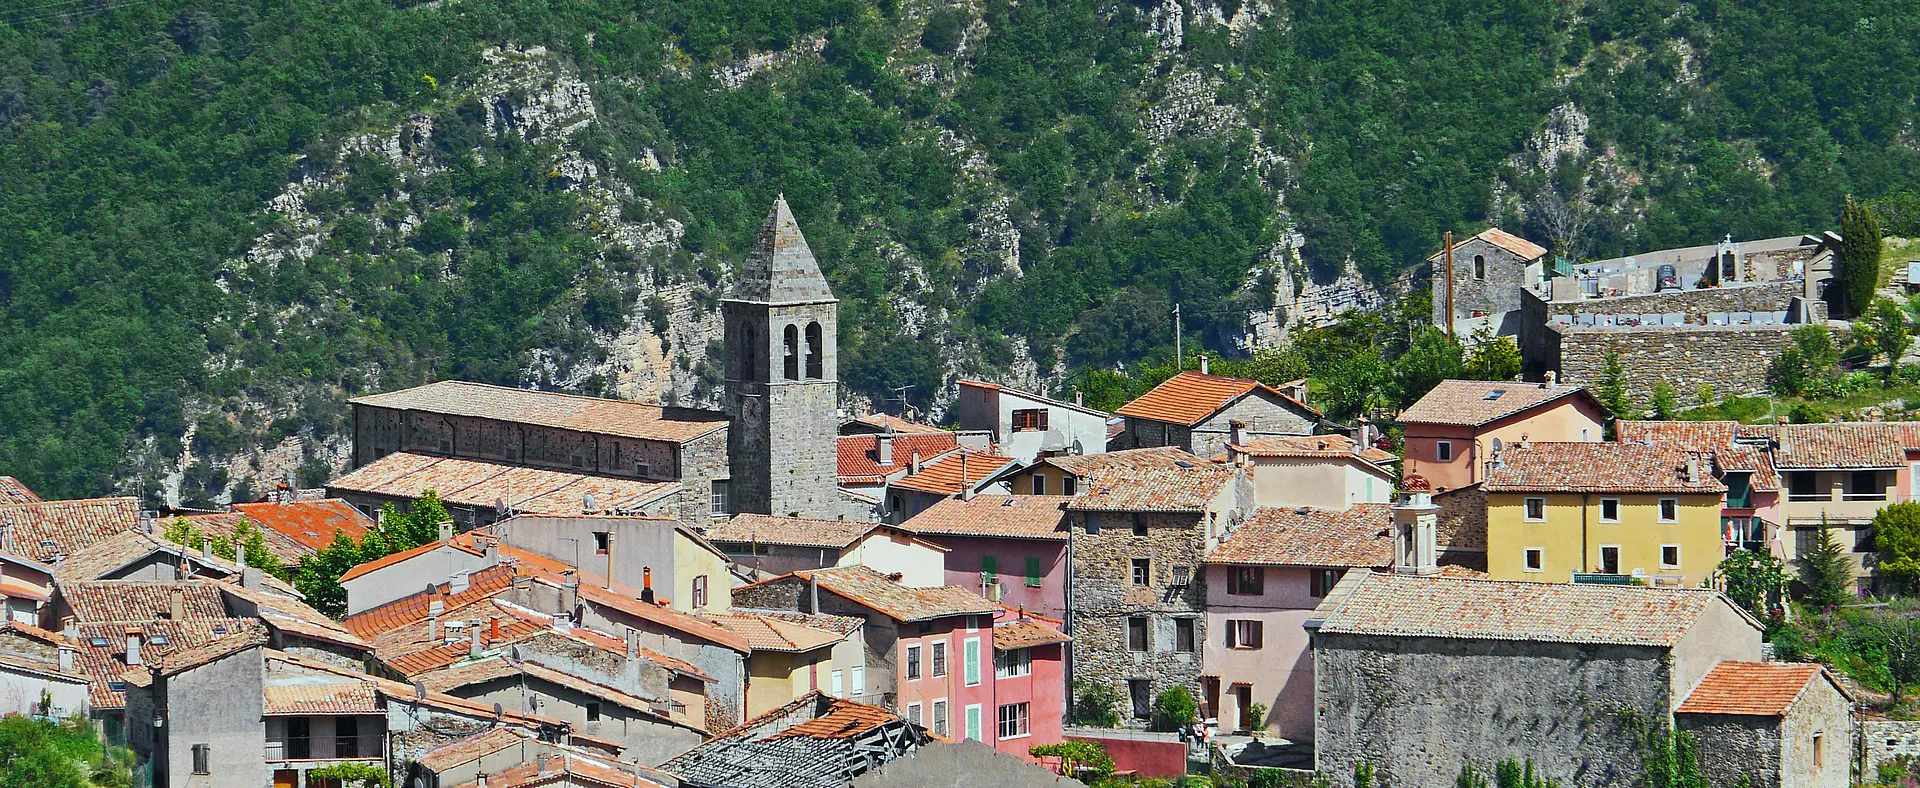 Vue typique d'un village typique d'occitanie en tuile terre cuite et son la toiture du clocher en ardoise